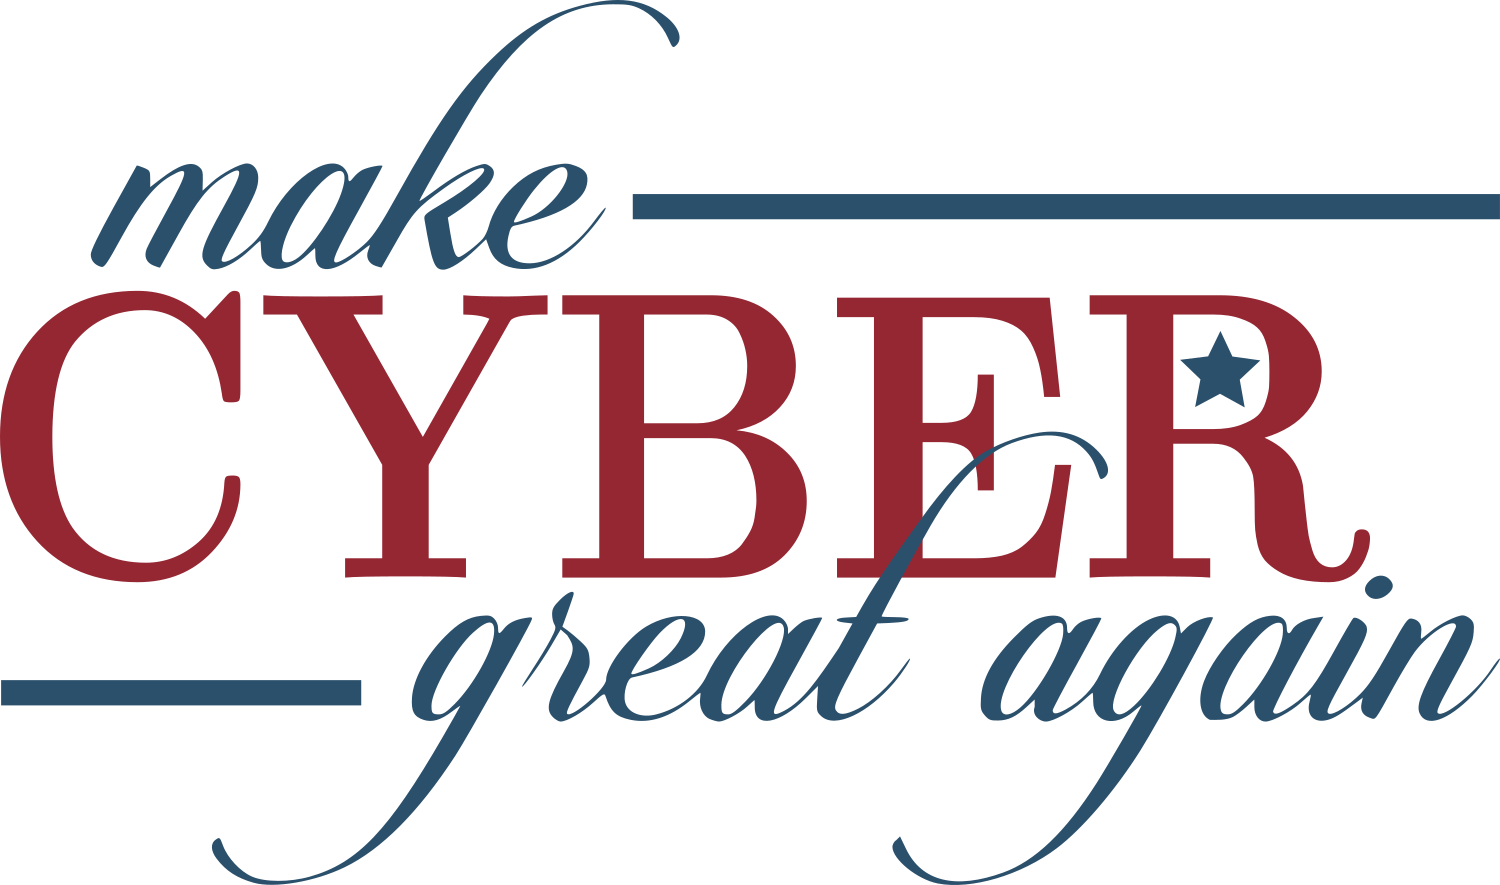 Make Cyber Great Again